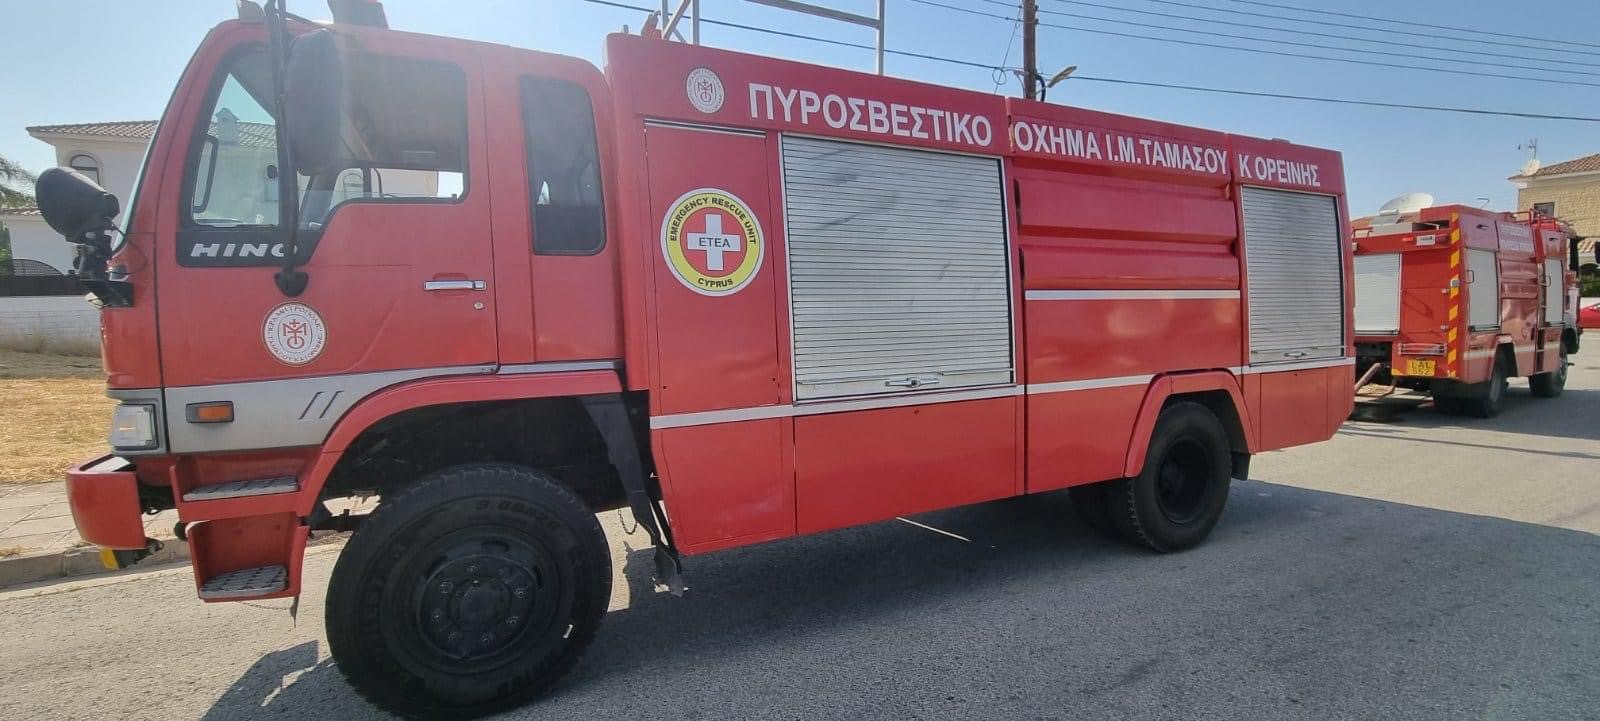 Φωτιά σε όχημα στη Λάρνακα ανταποκρίθηκε η Πυροσβεστική